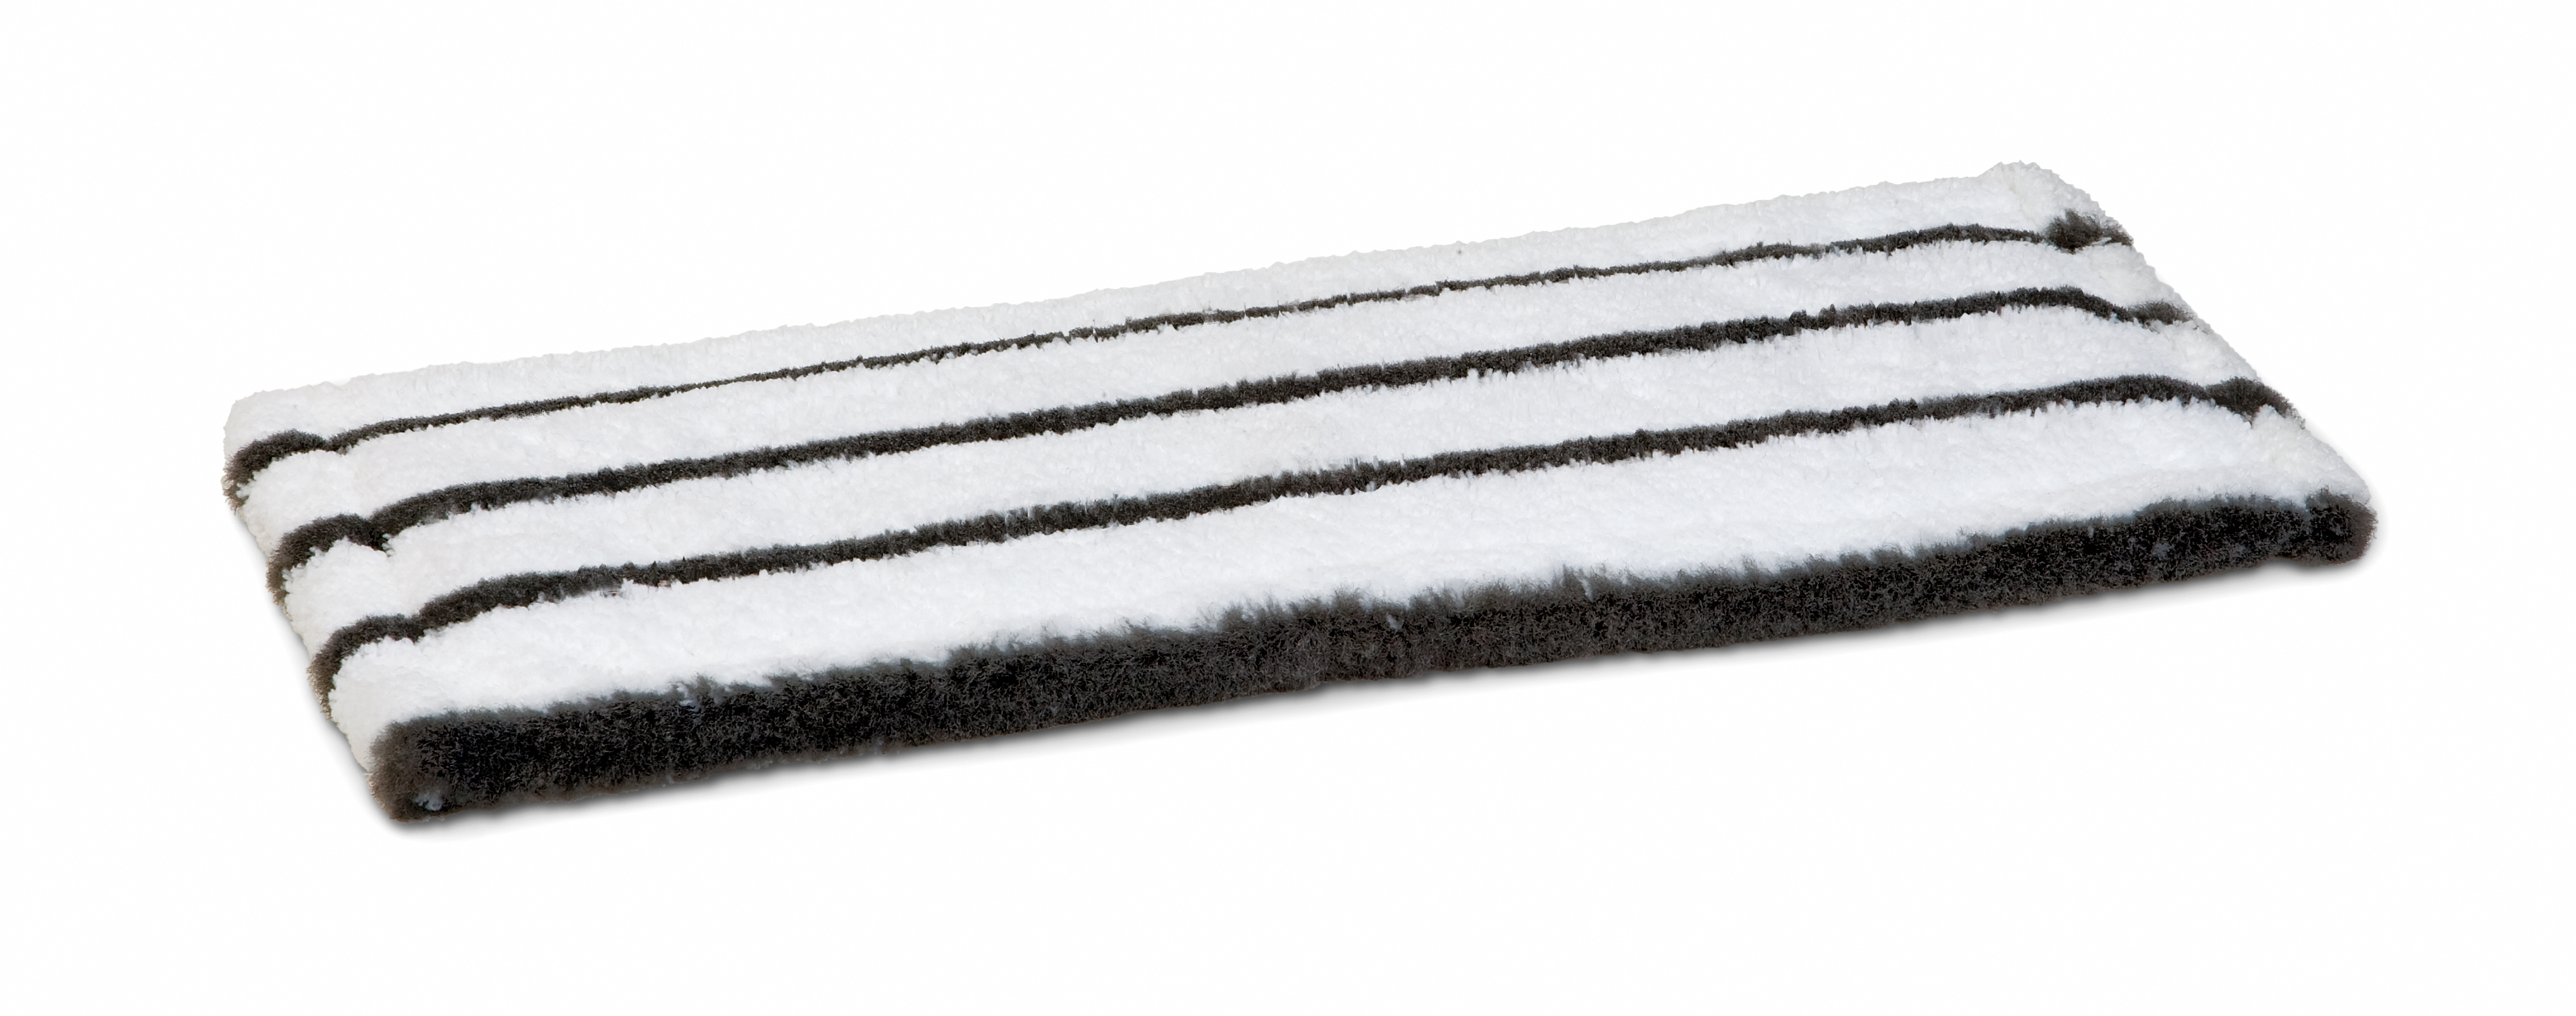 Microfasermopp Profi, weiß/grau mit grauen Borsten, 40 cm